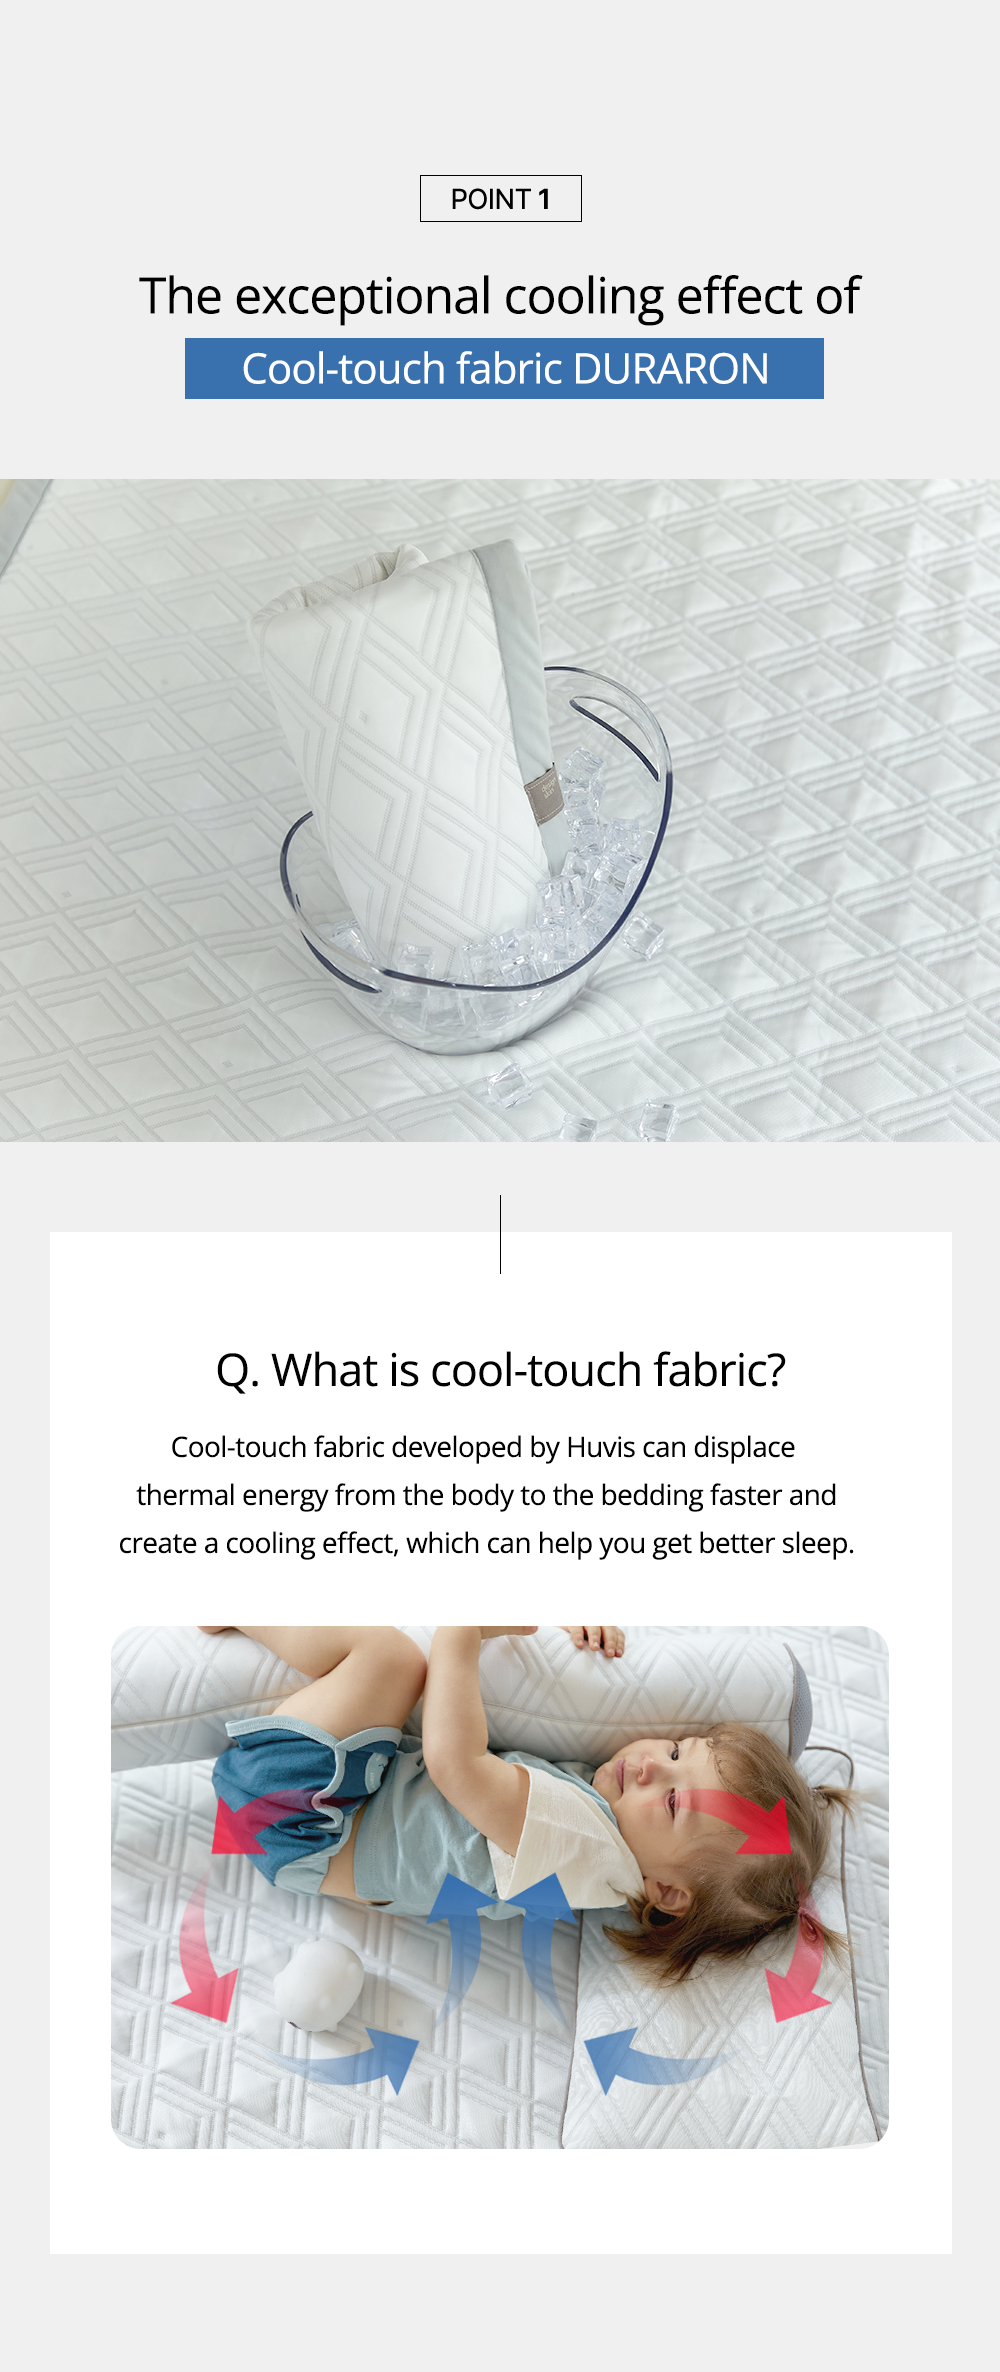 Designskin baby cooling mat duraron fabric